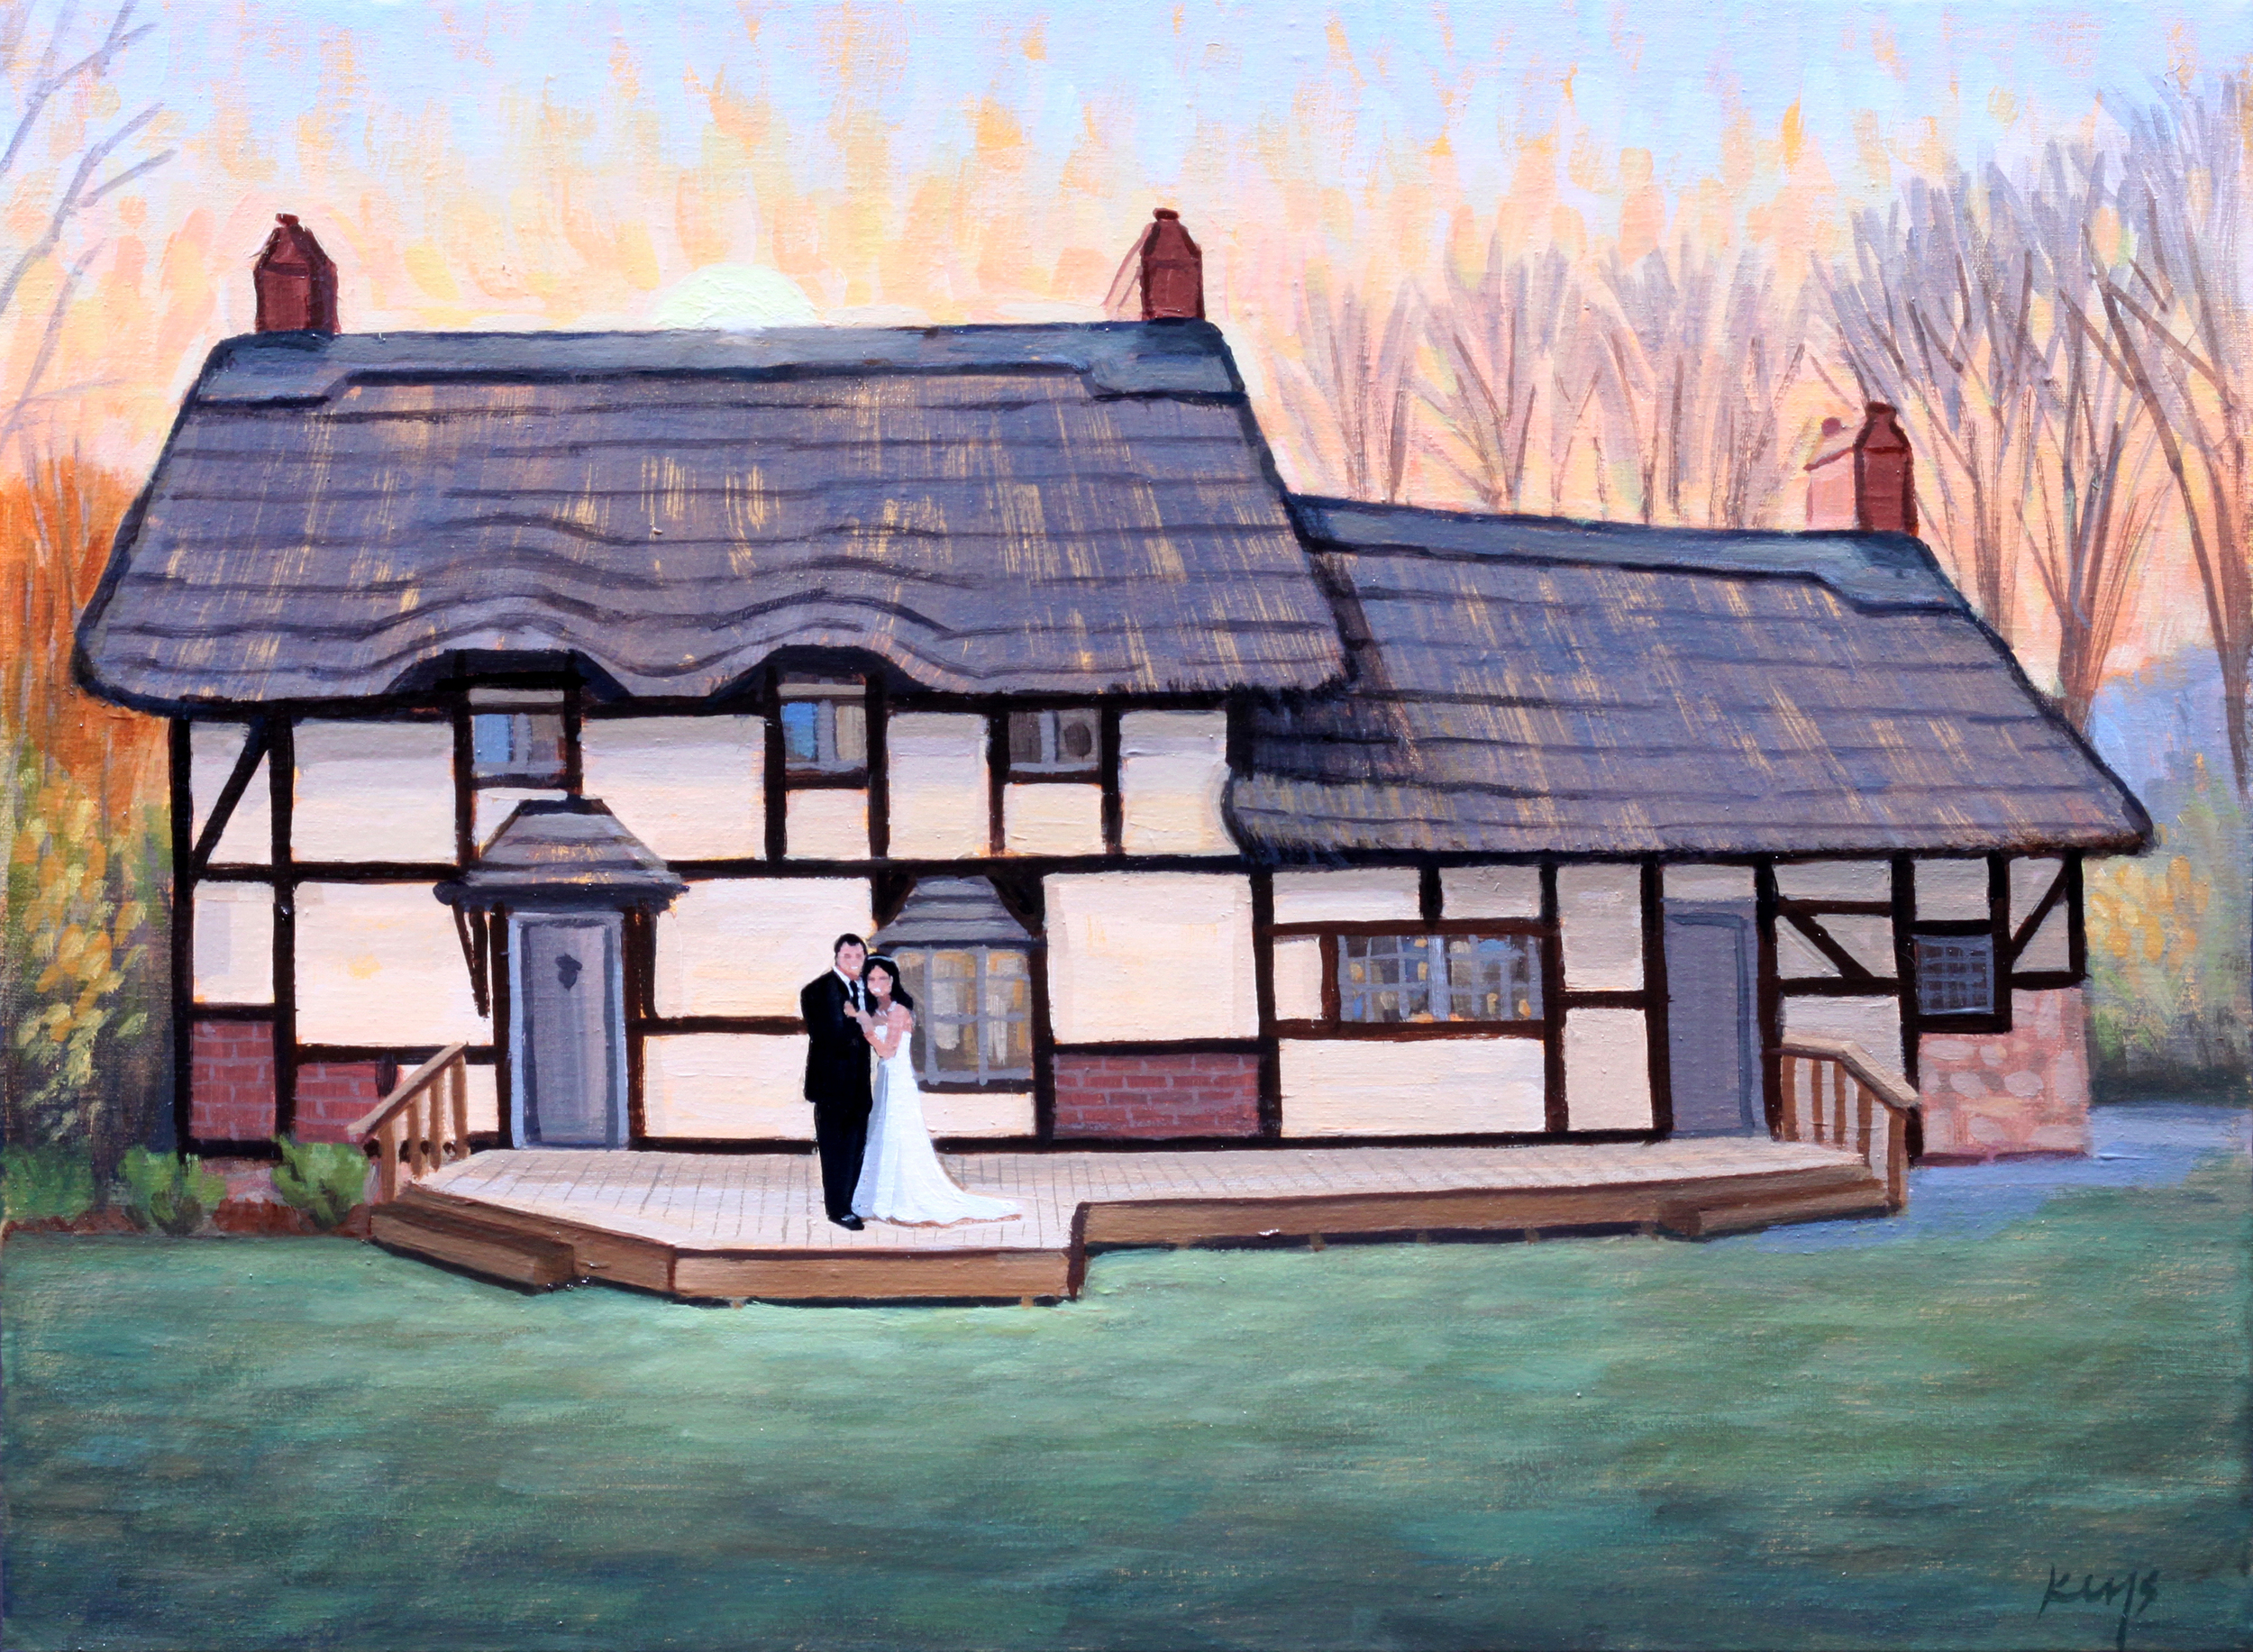 Danielle and Drew, Wedding Portrait | 12 x 16 in. Oil on Canvas | Anne Hathaway's Cottage, Staunton, VA